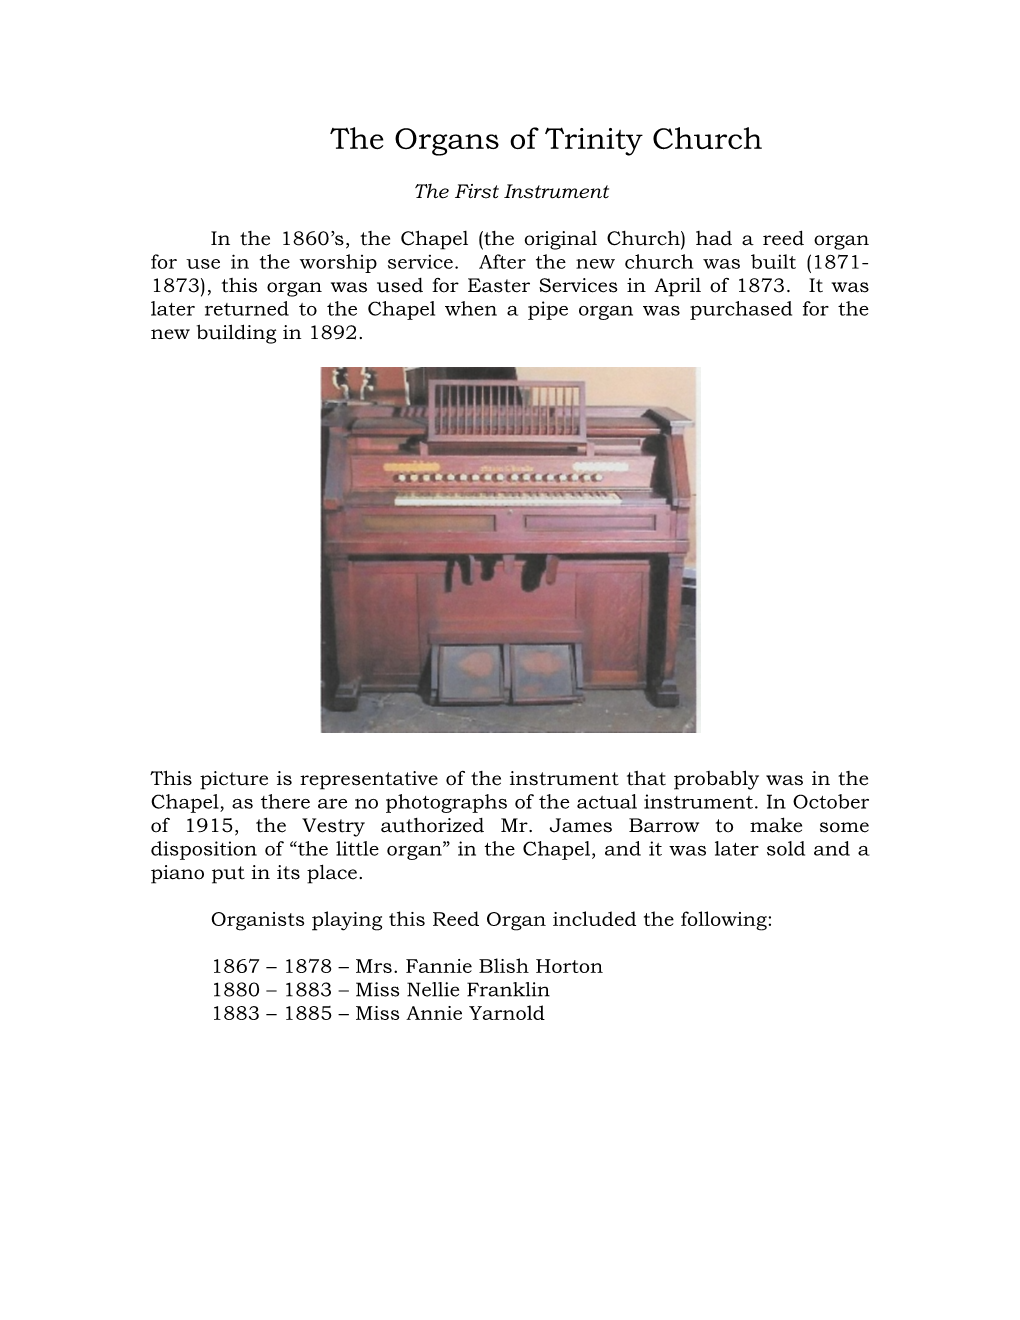 The Organs of Trinity Church (PDF)